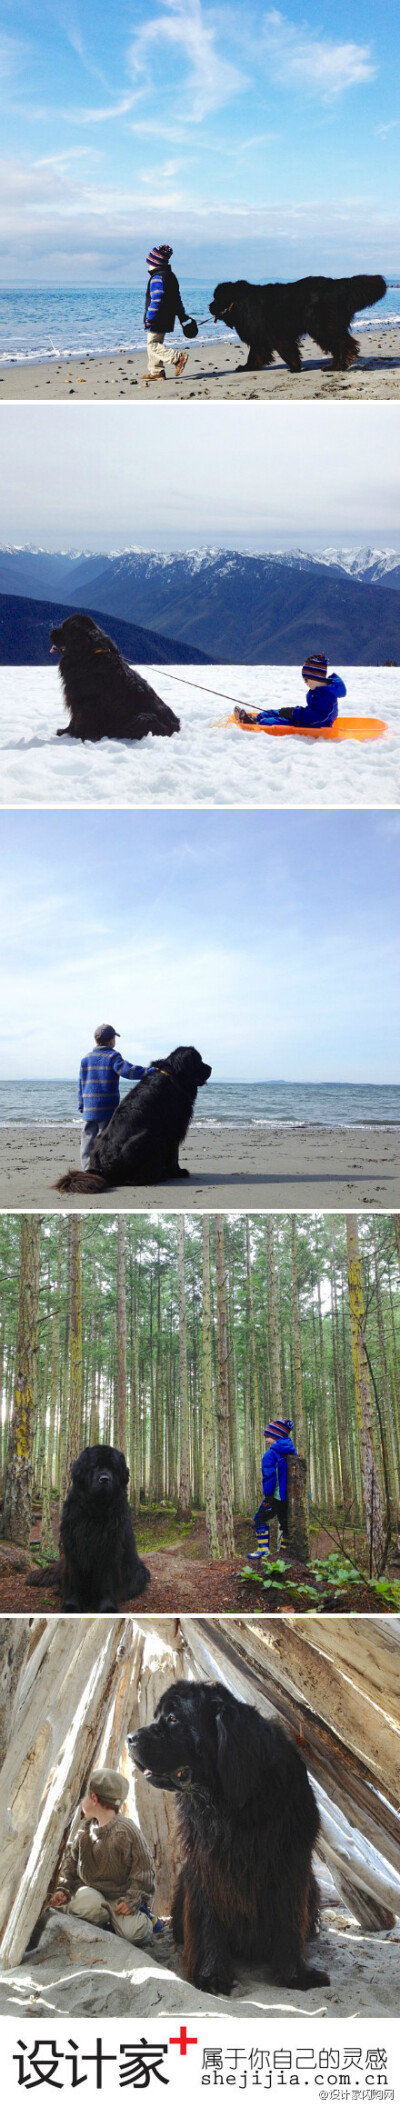 #设计家爱生活#“4岁男孩Julian 和5岁纽芬兰犬Max”Part2.By Stasha Becker